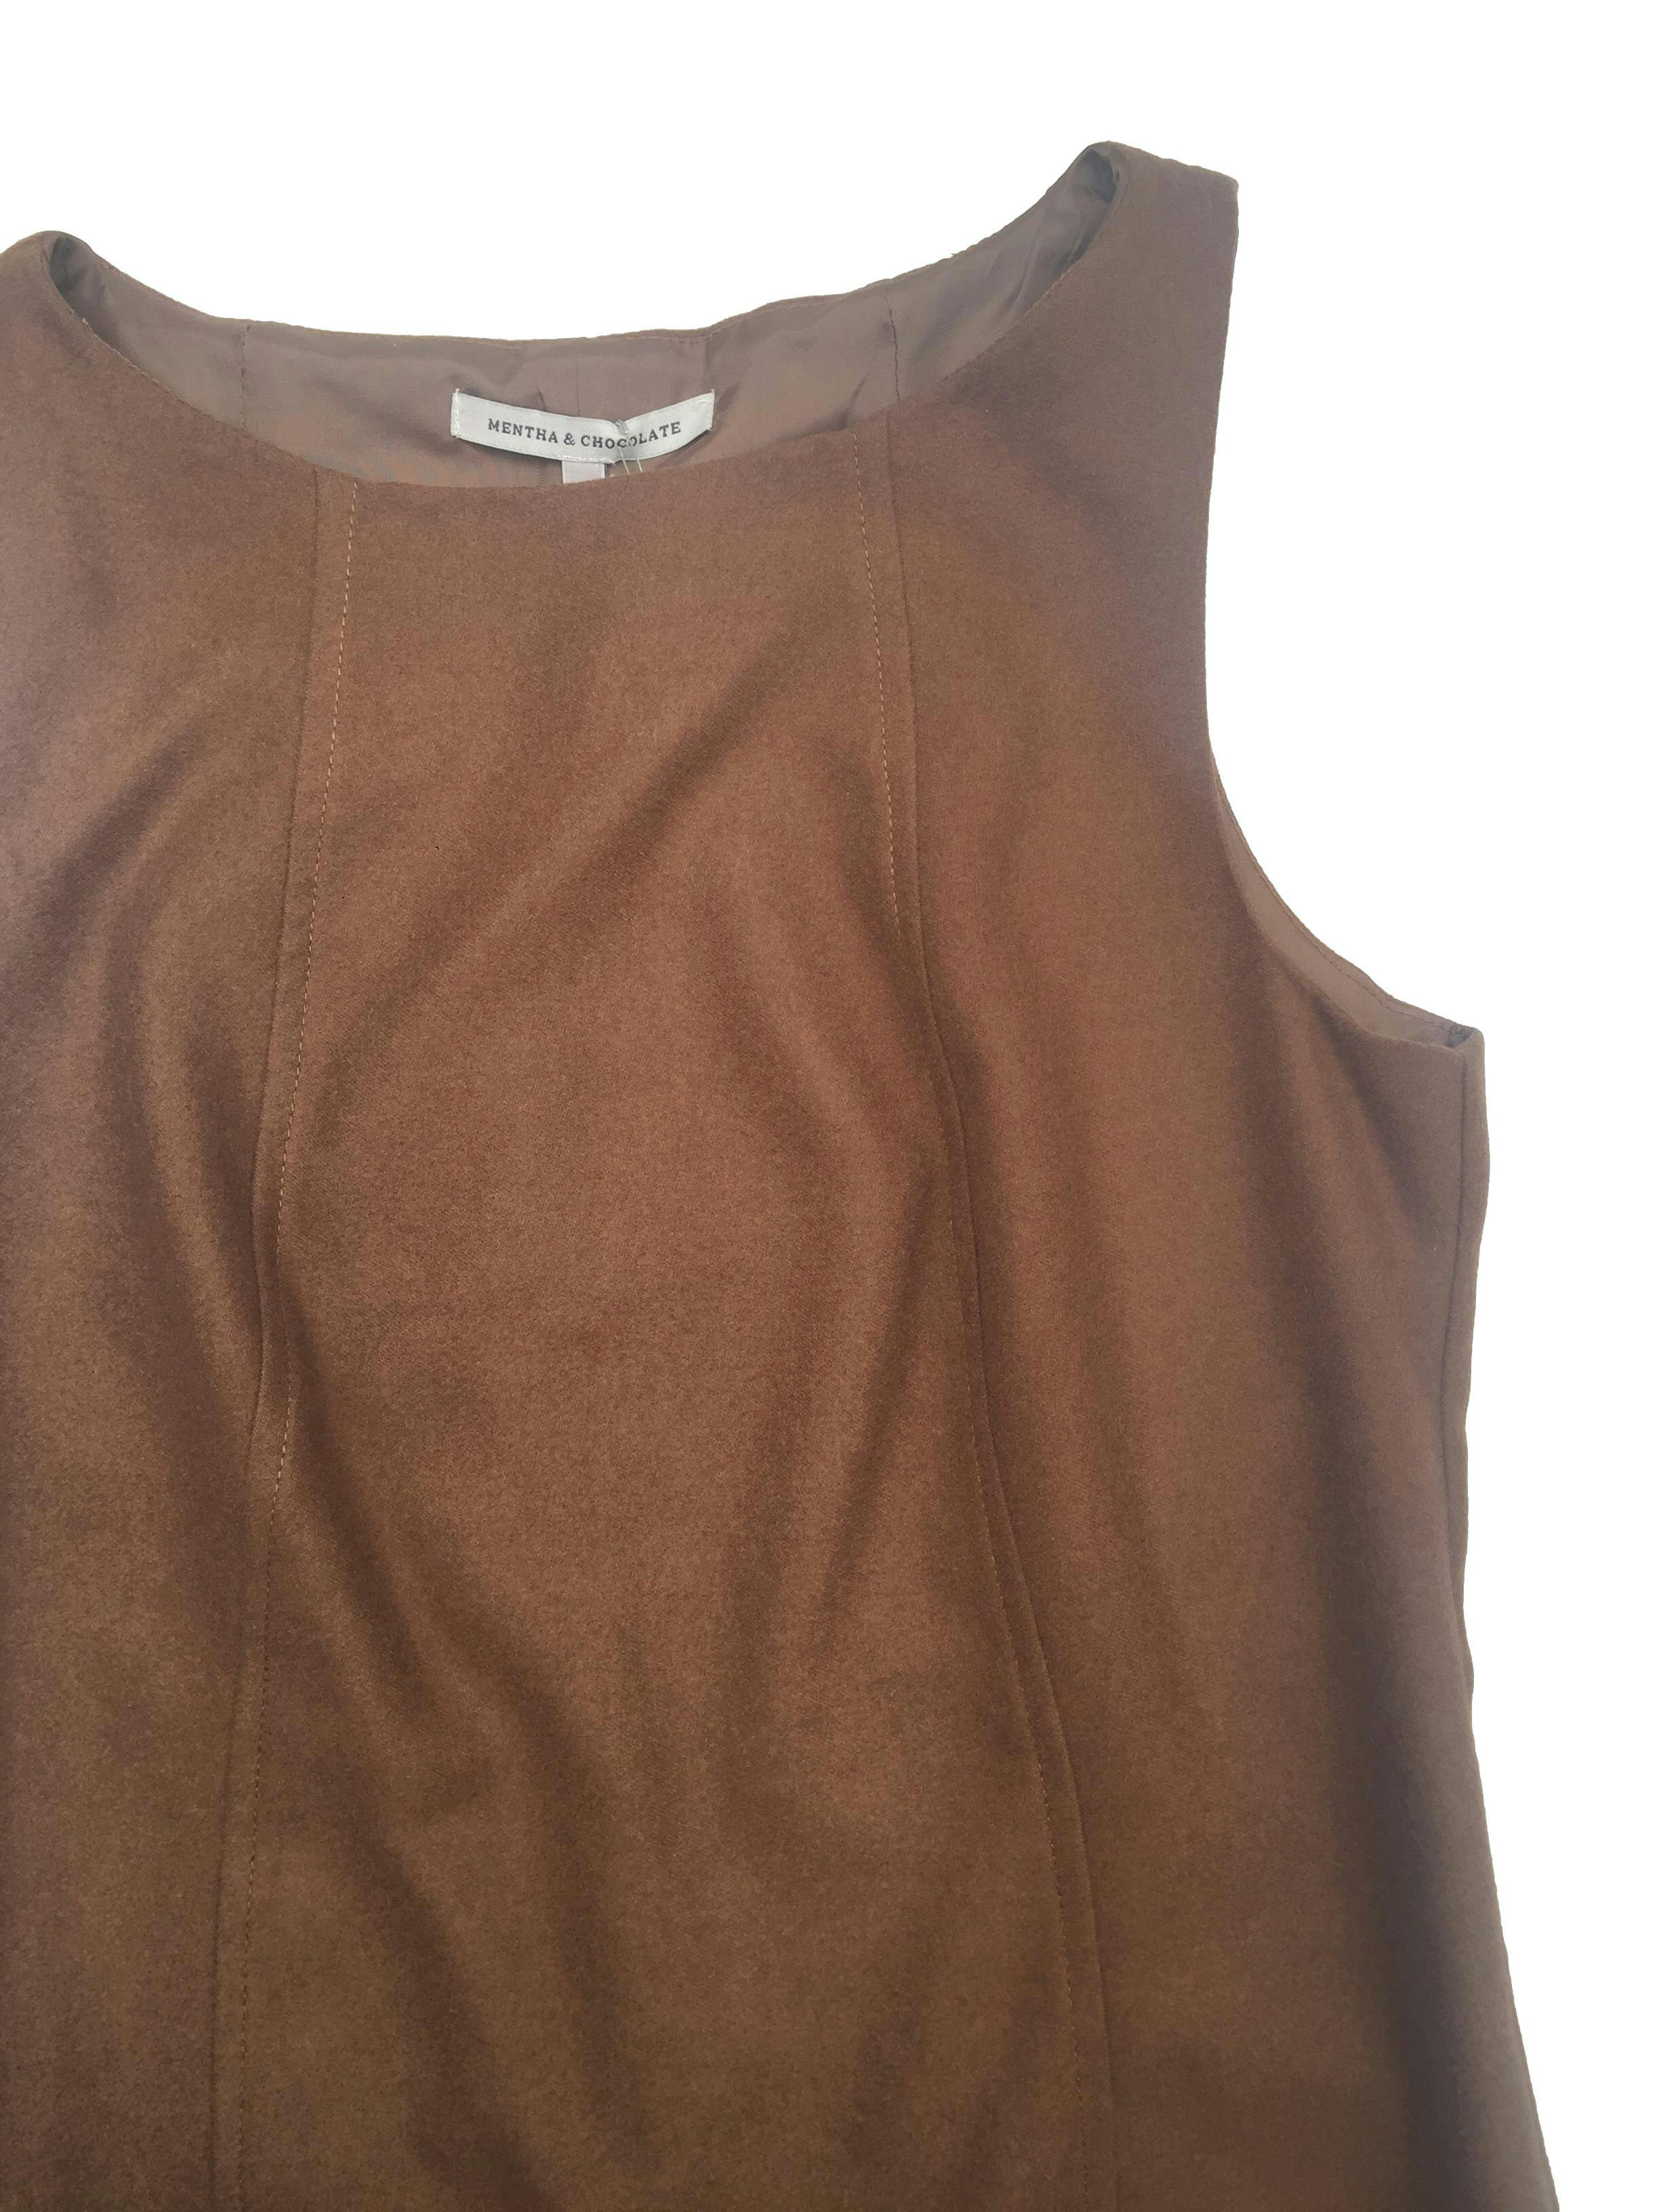 Vestido Mentha & Chocolate de lanilla marrón y color block negro, forrado. Nuevo con etiqueta, precio original S/169. Busto 94cm, Largo 87cm.